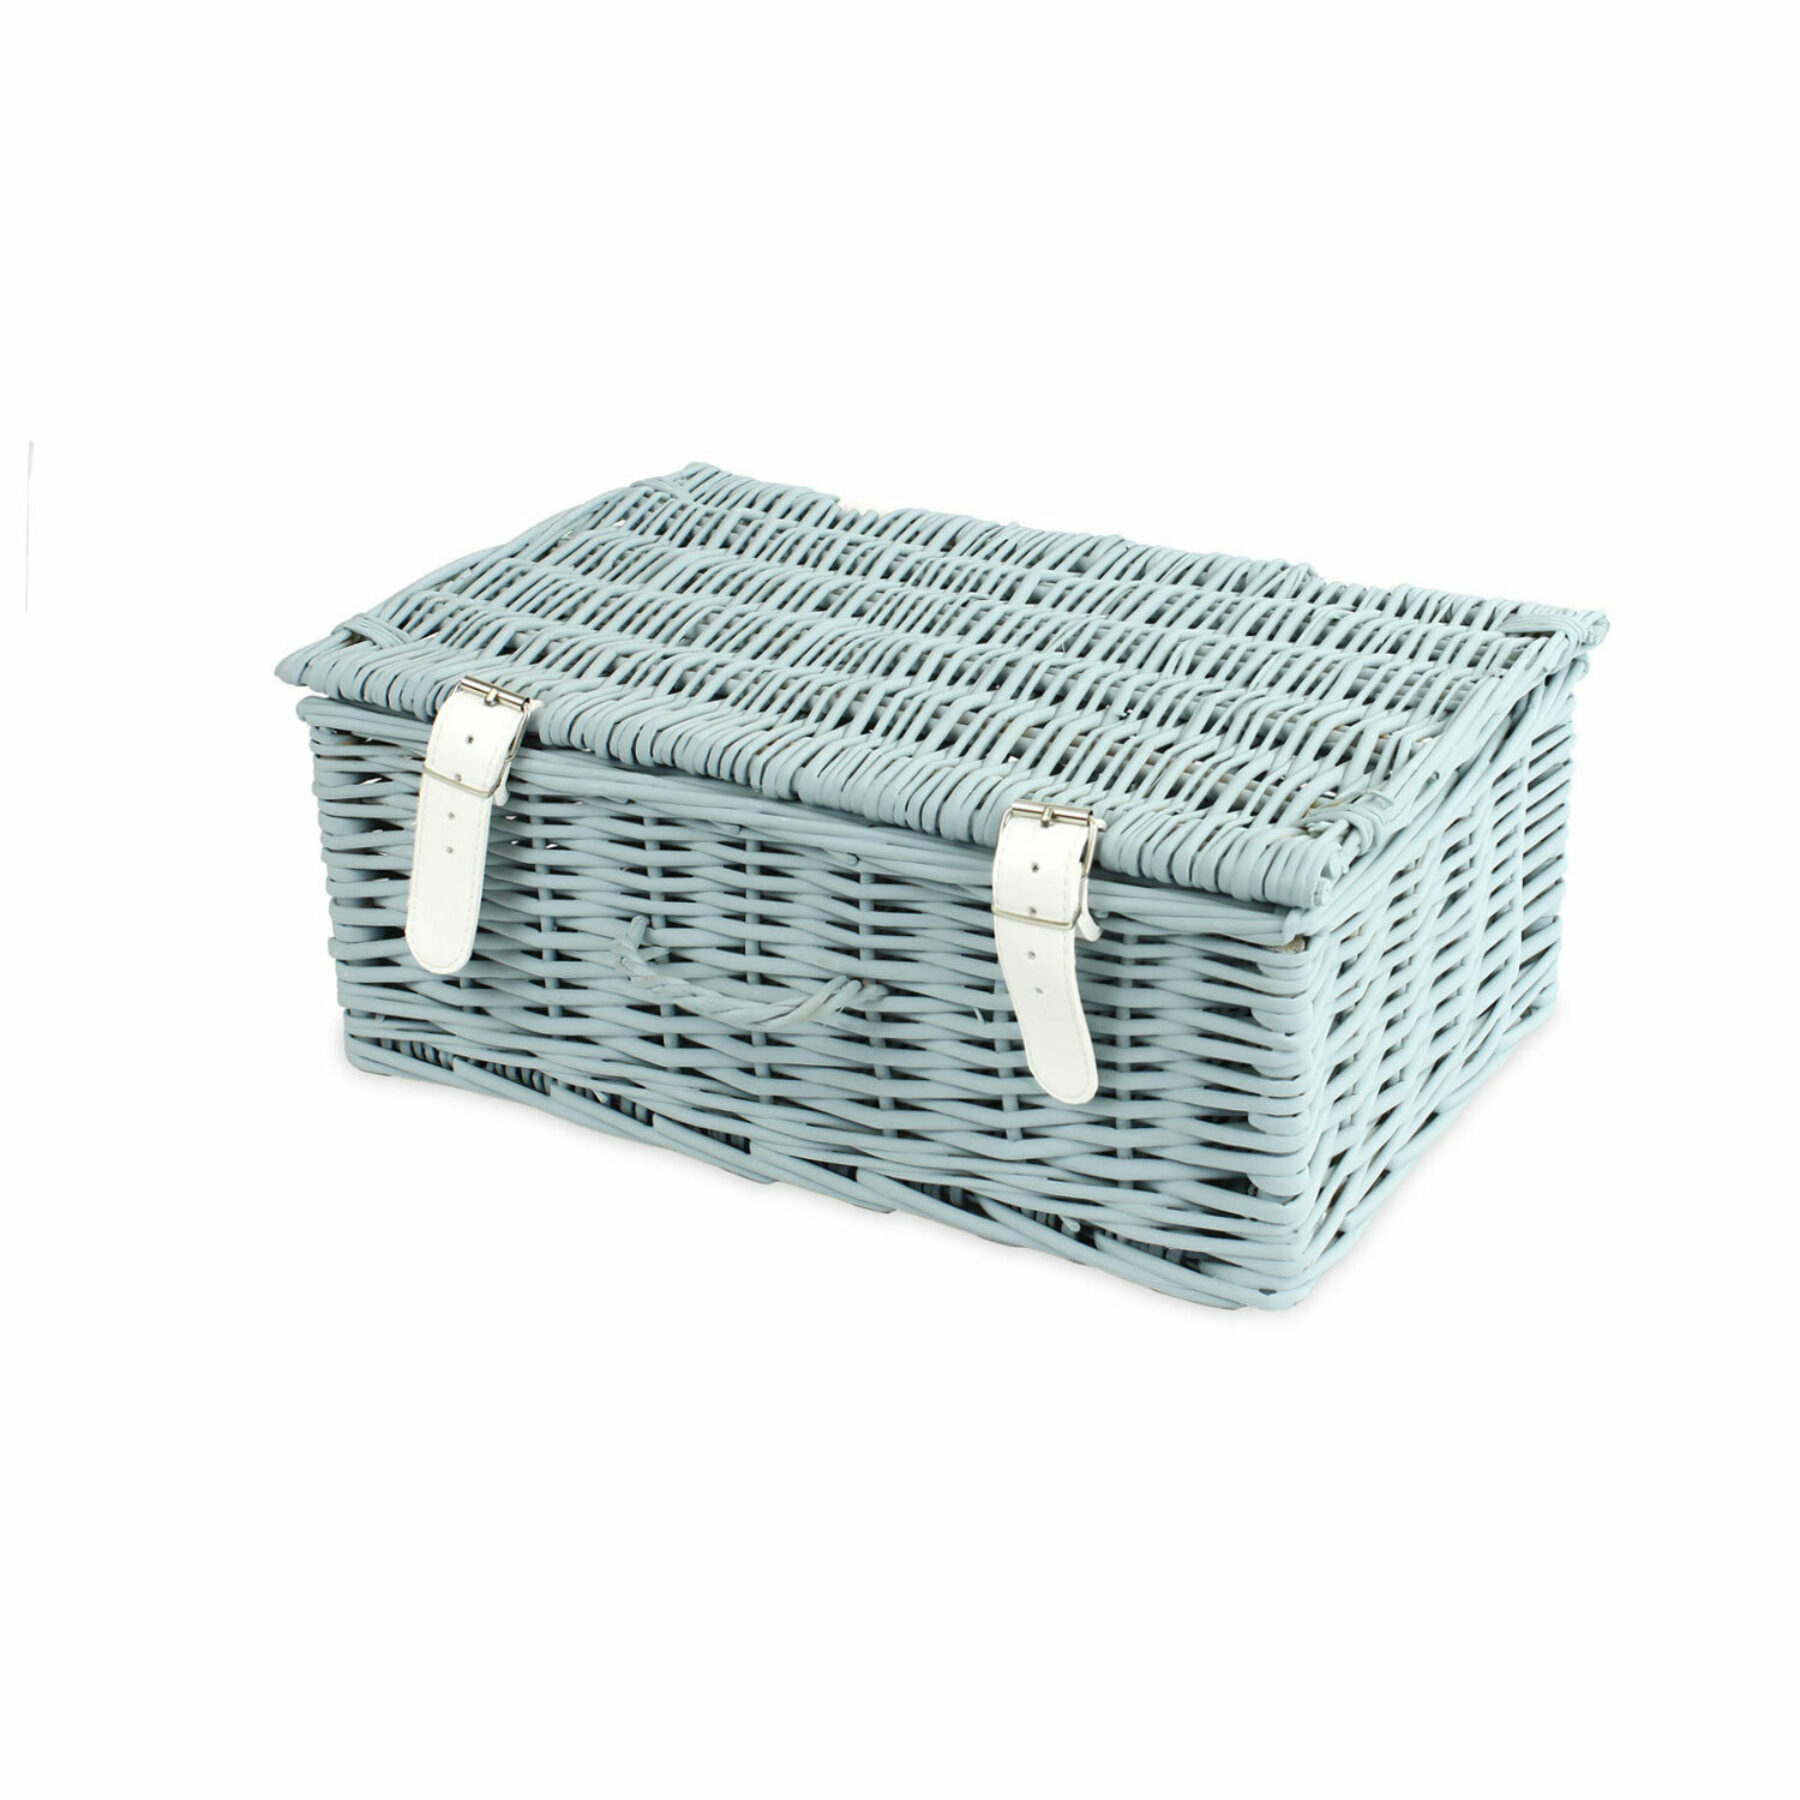 14 Inch Hamper Basket - Light Grey